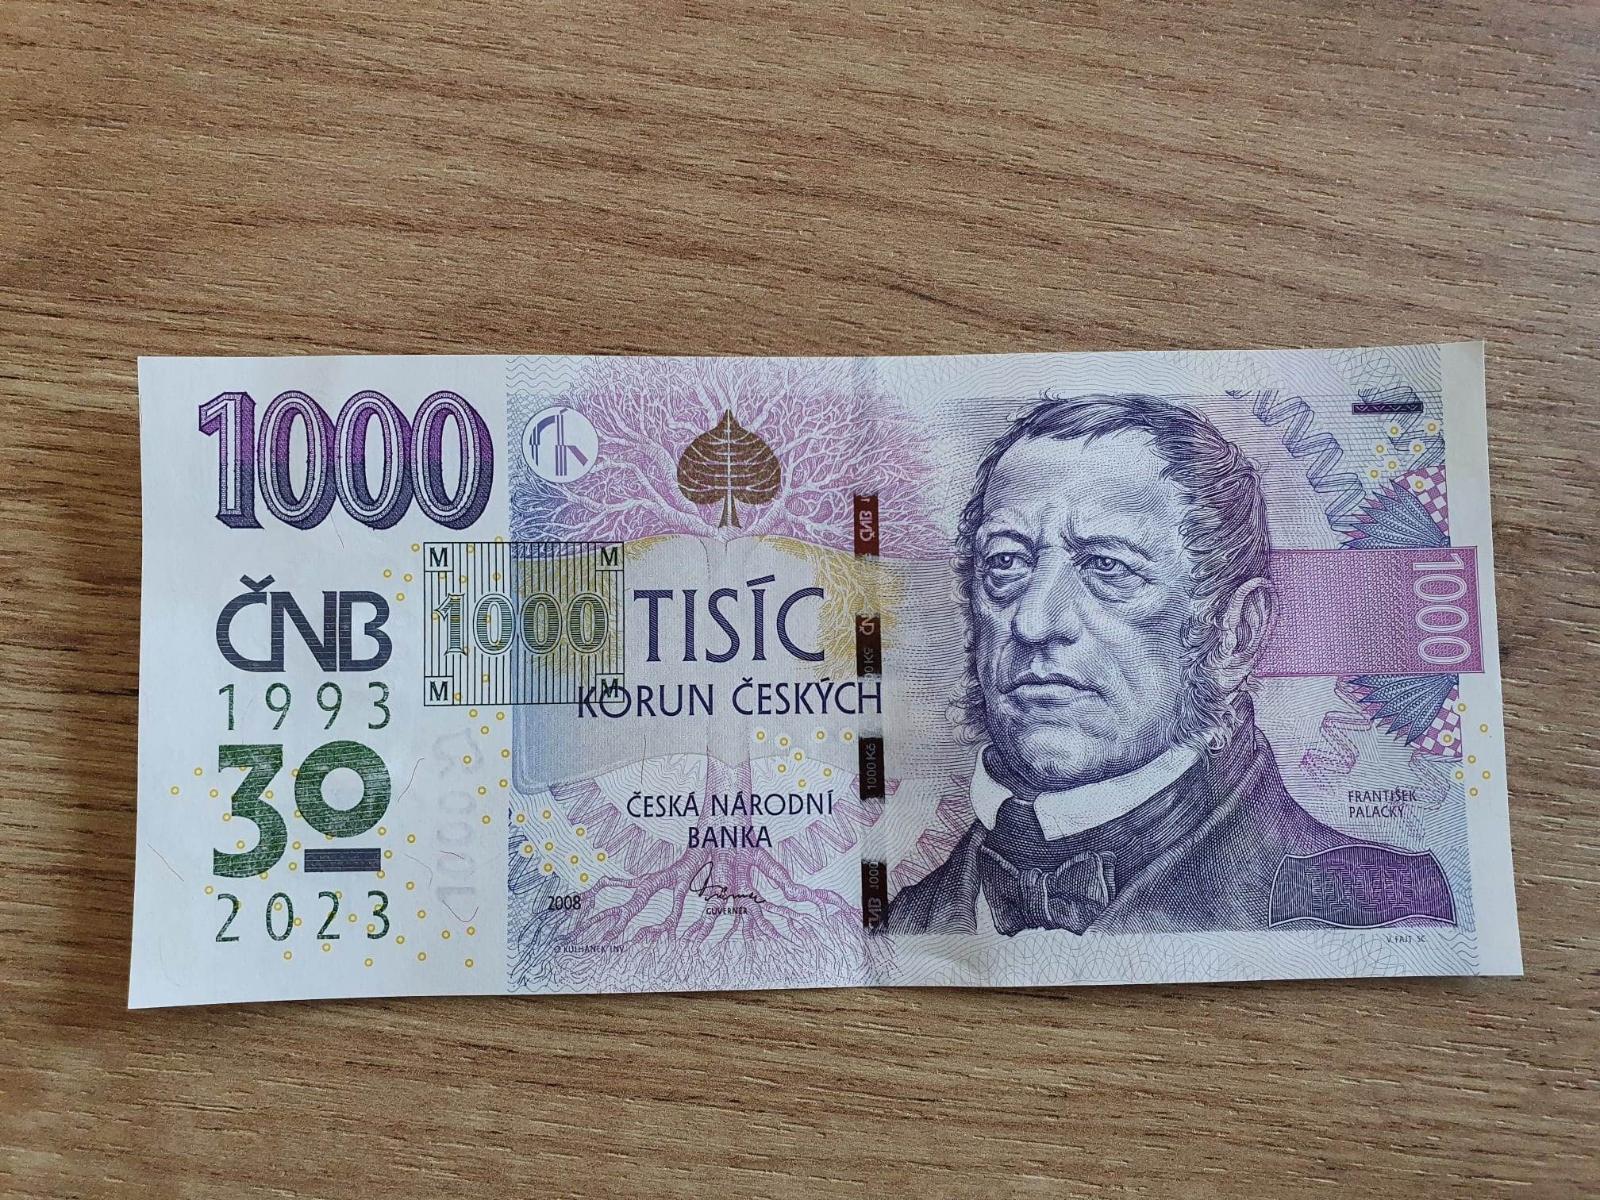 1000 Kč s prítlačou ČNB - Výročná bankovka 30 rokov - 2023 - Bankovky